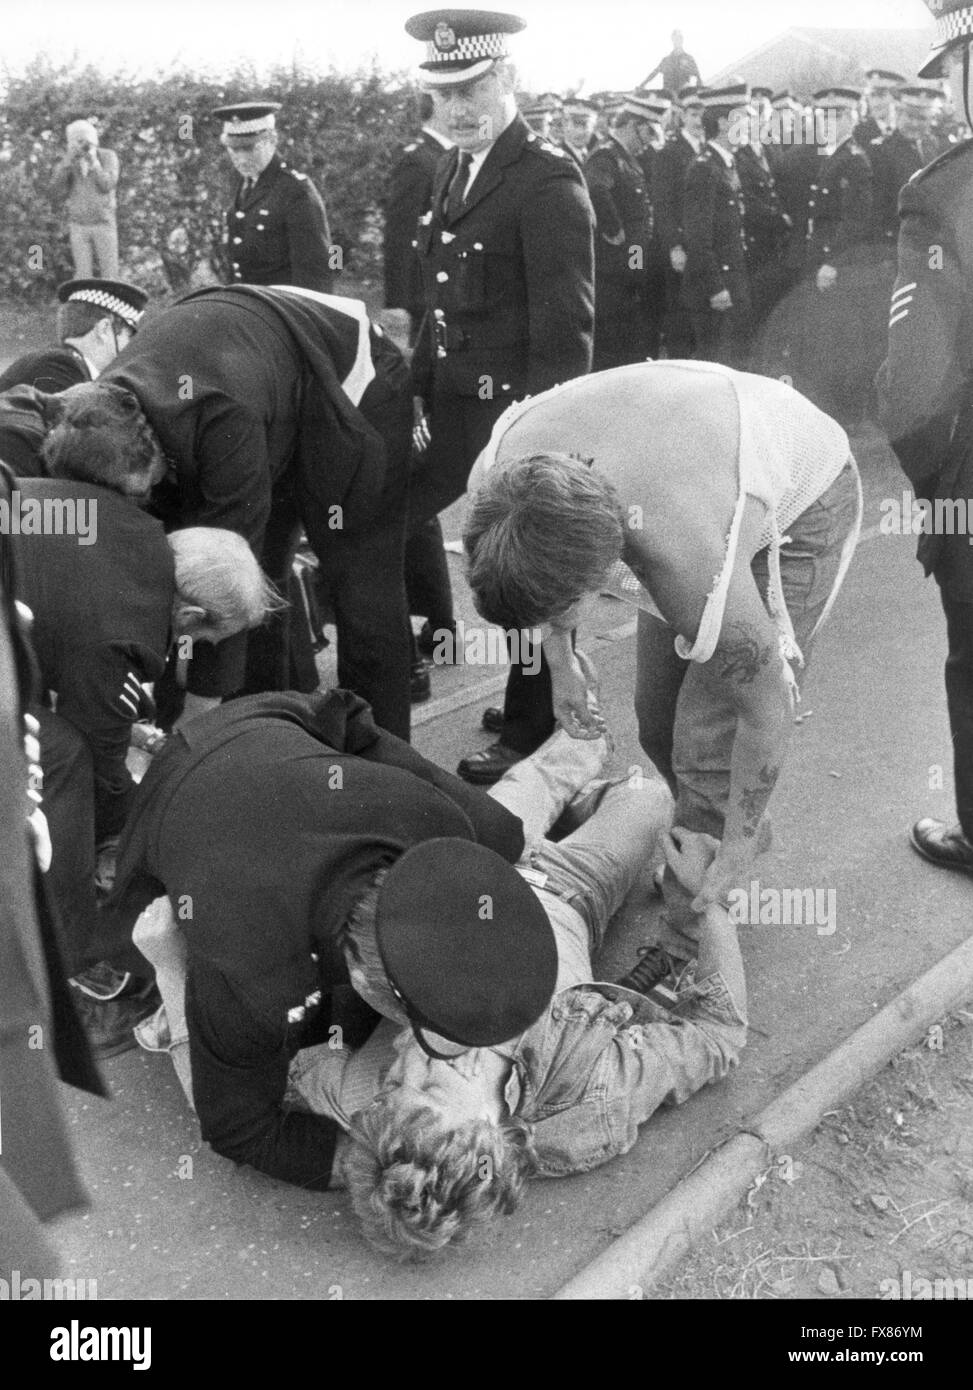 Inspecteur de police donne vie à baiser de piquetage blessé à Glen Bilston durant la grève des mineurs de la mine de 1984 Banque D'Images